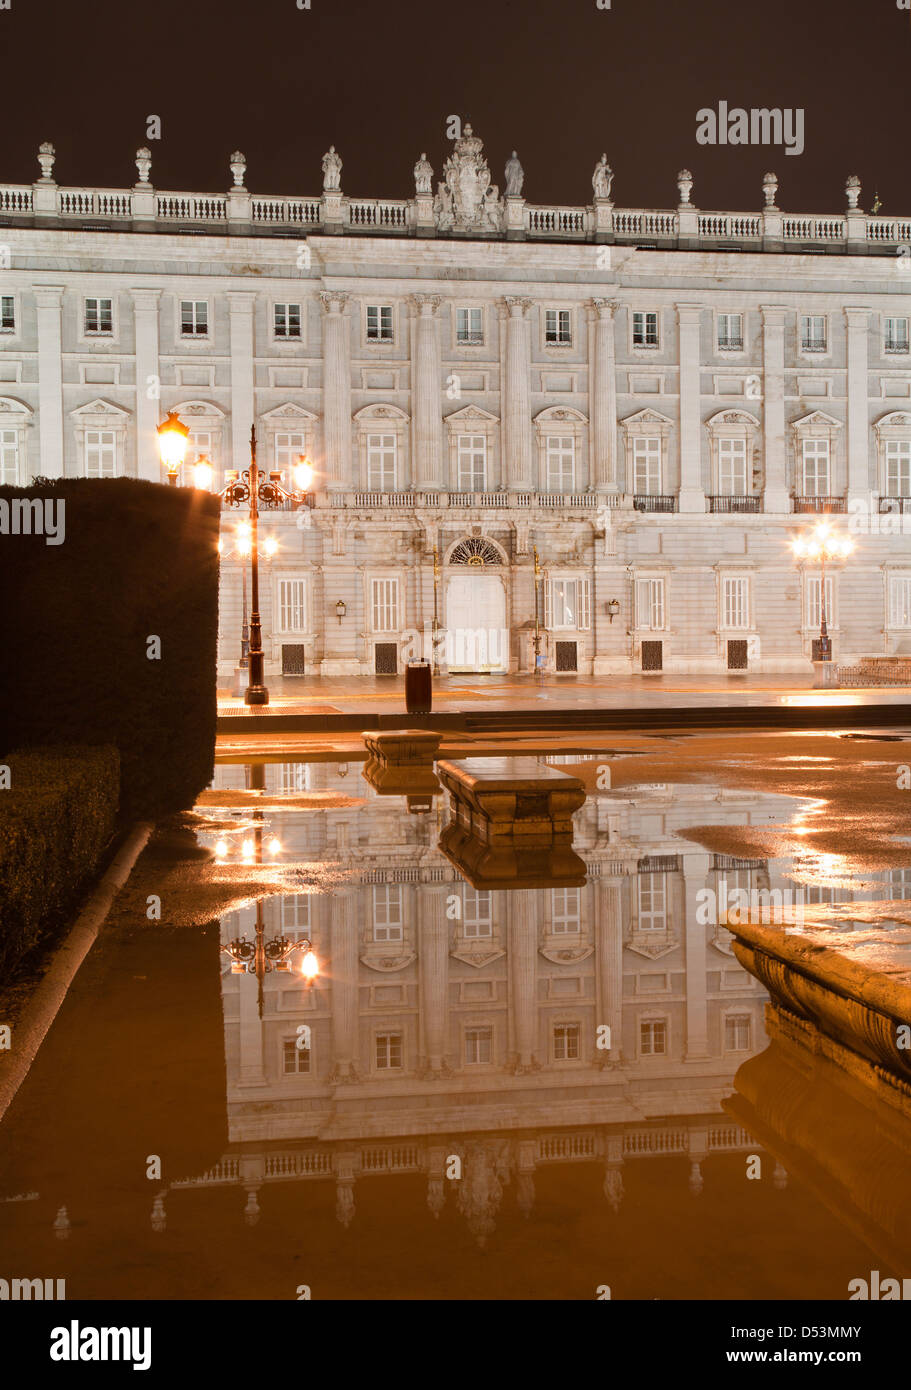 MADRID - März 10: Ostfassade des Palacio Real oder Royal Palace gebaut zwischen den Jahren 1738 und 1755 Stockfoto